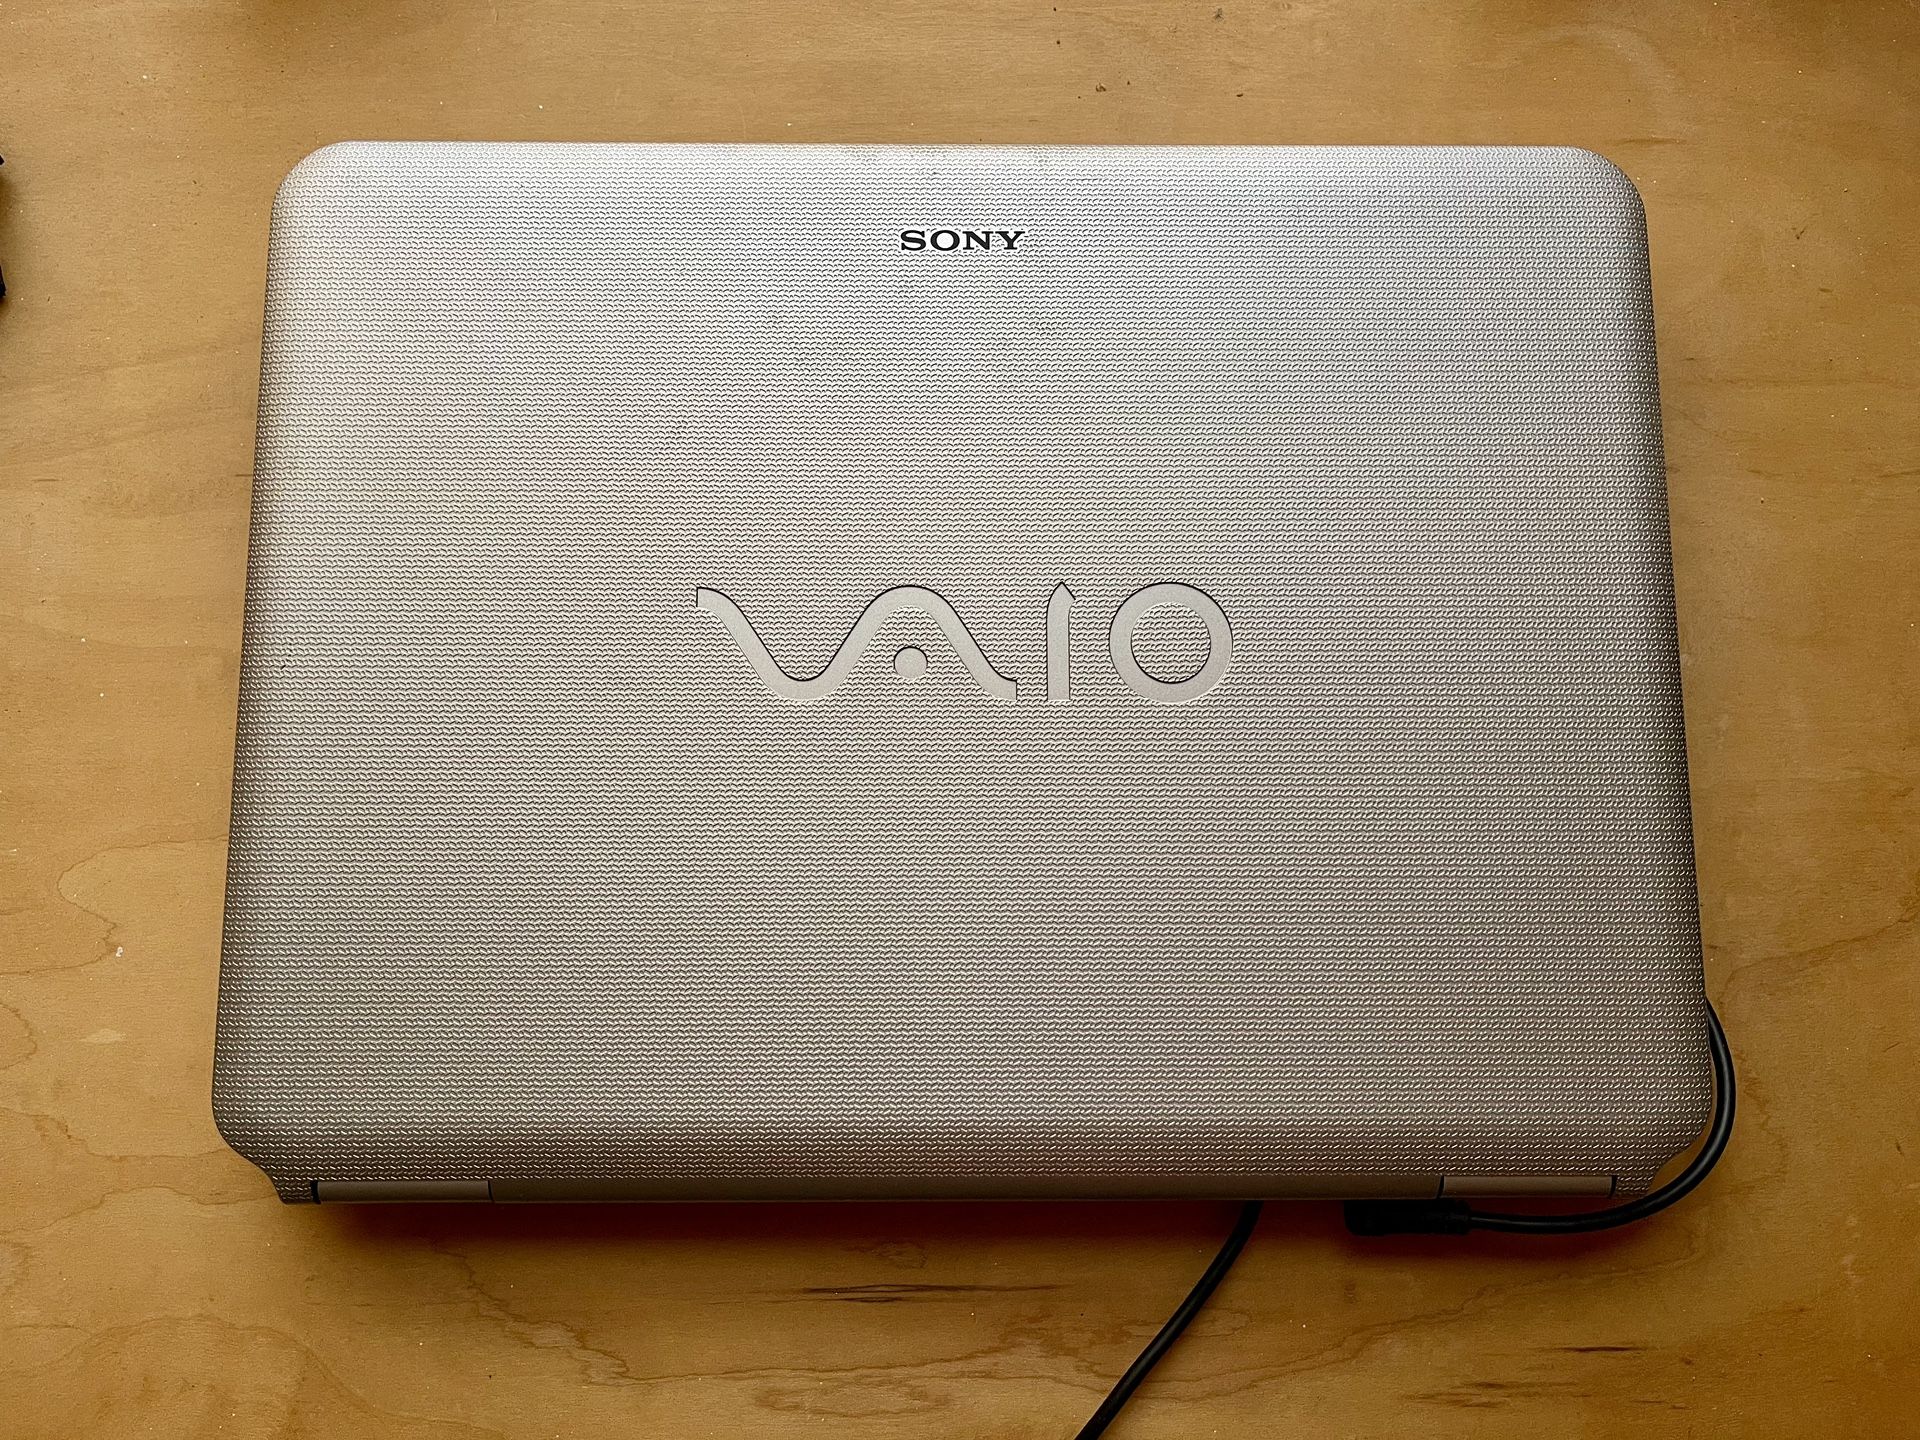 Sony VAIO 15inch Laptop